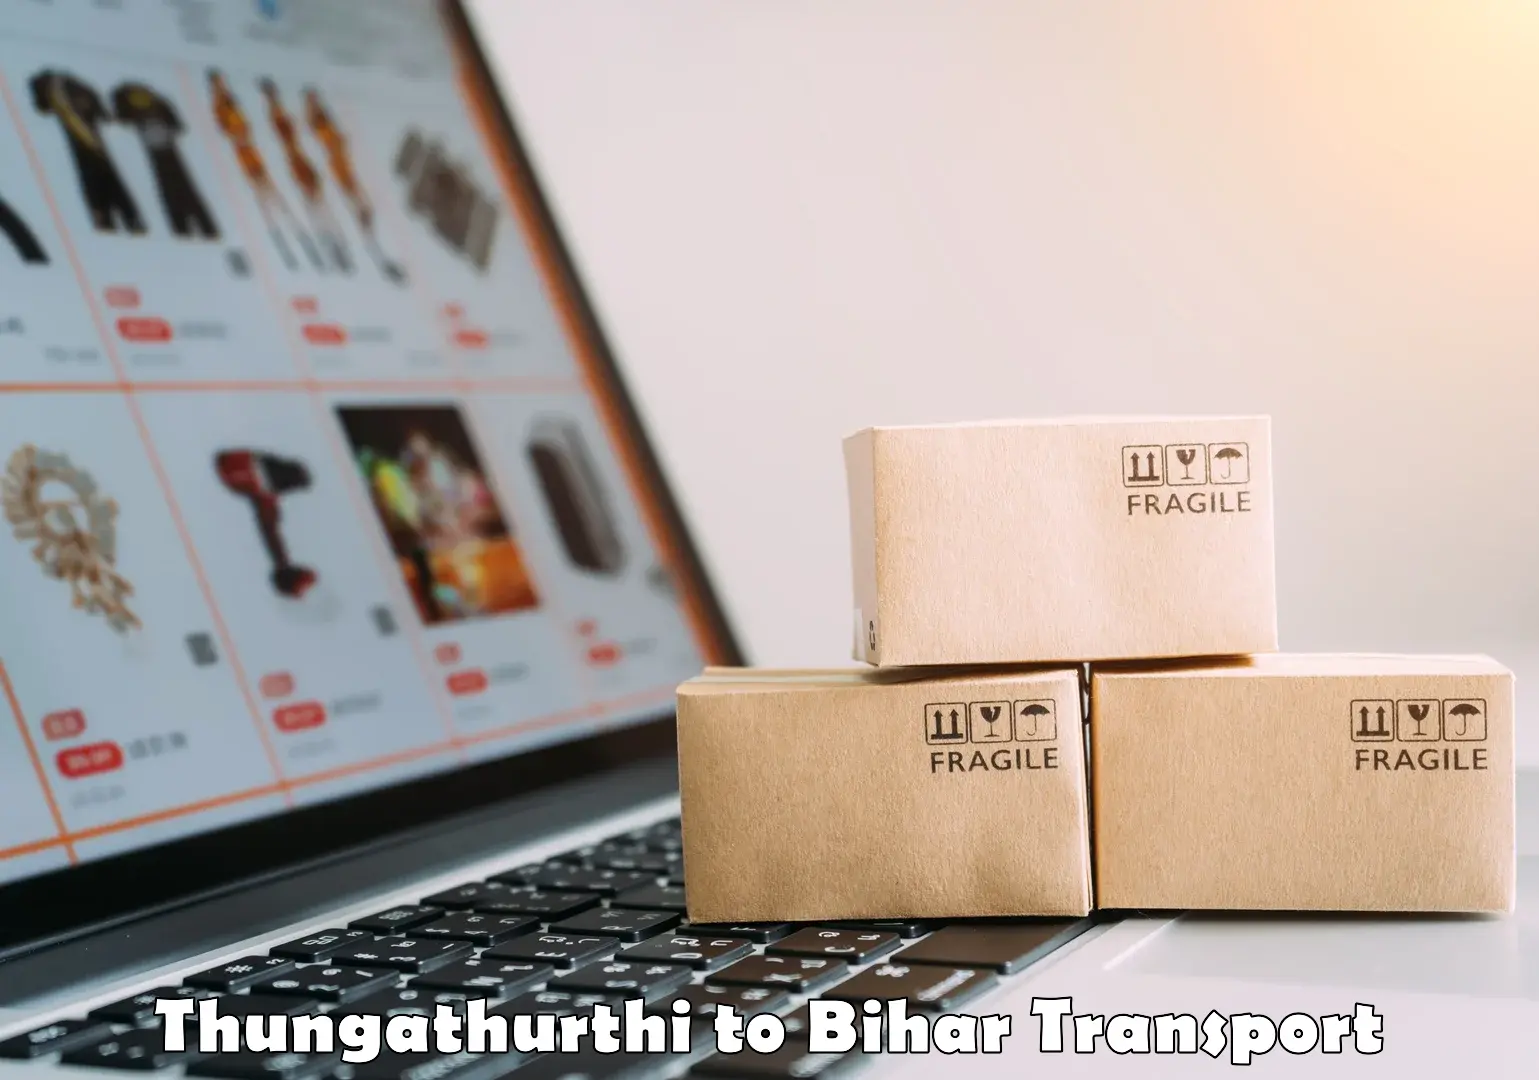 Nearest transport service Thungathurthi to Bakhri